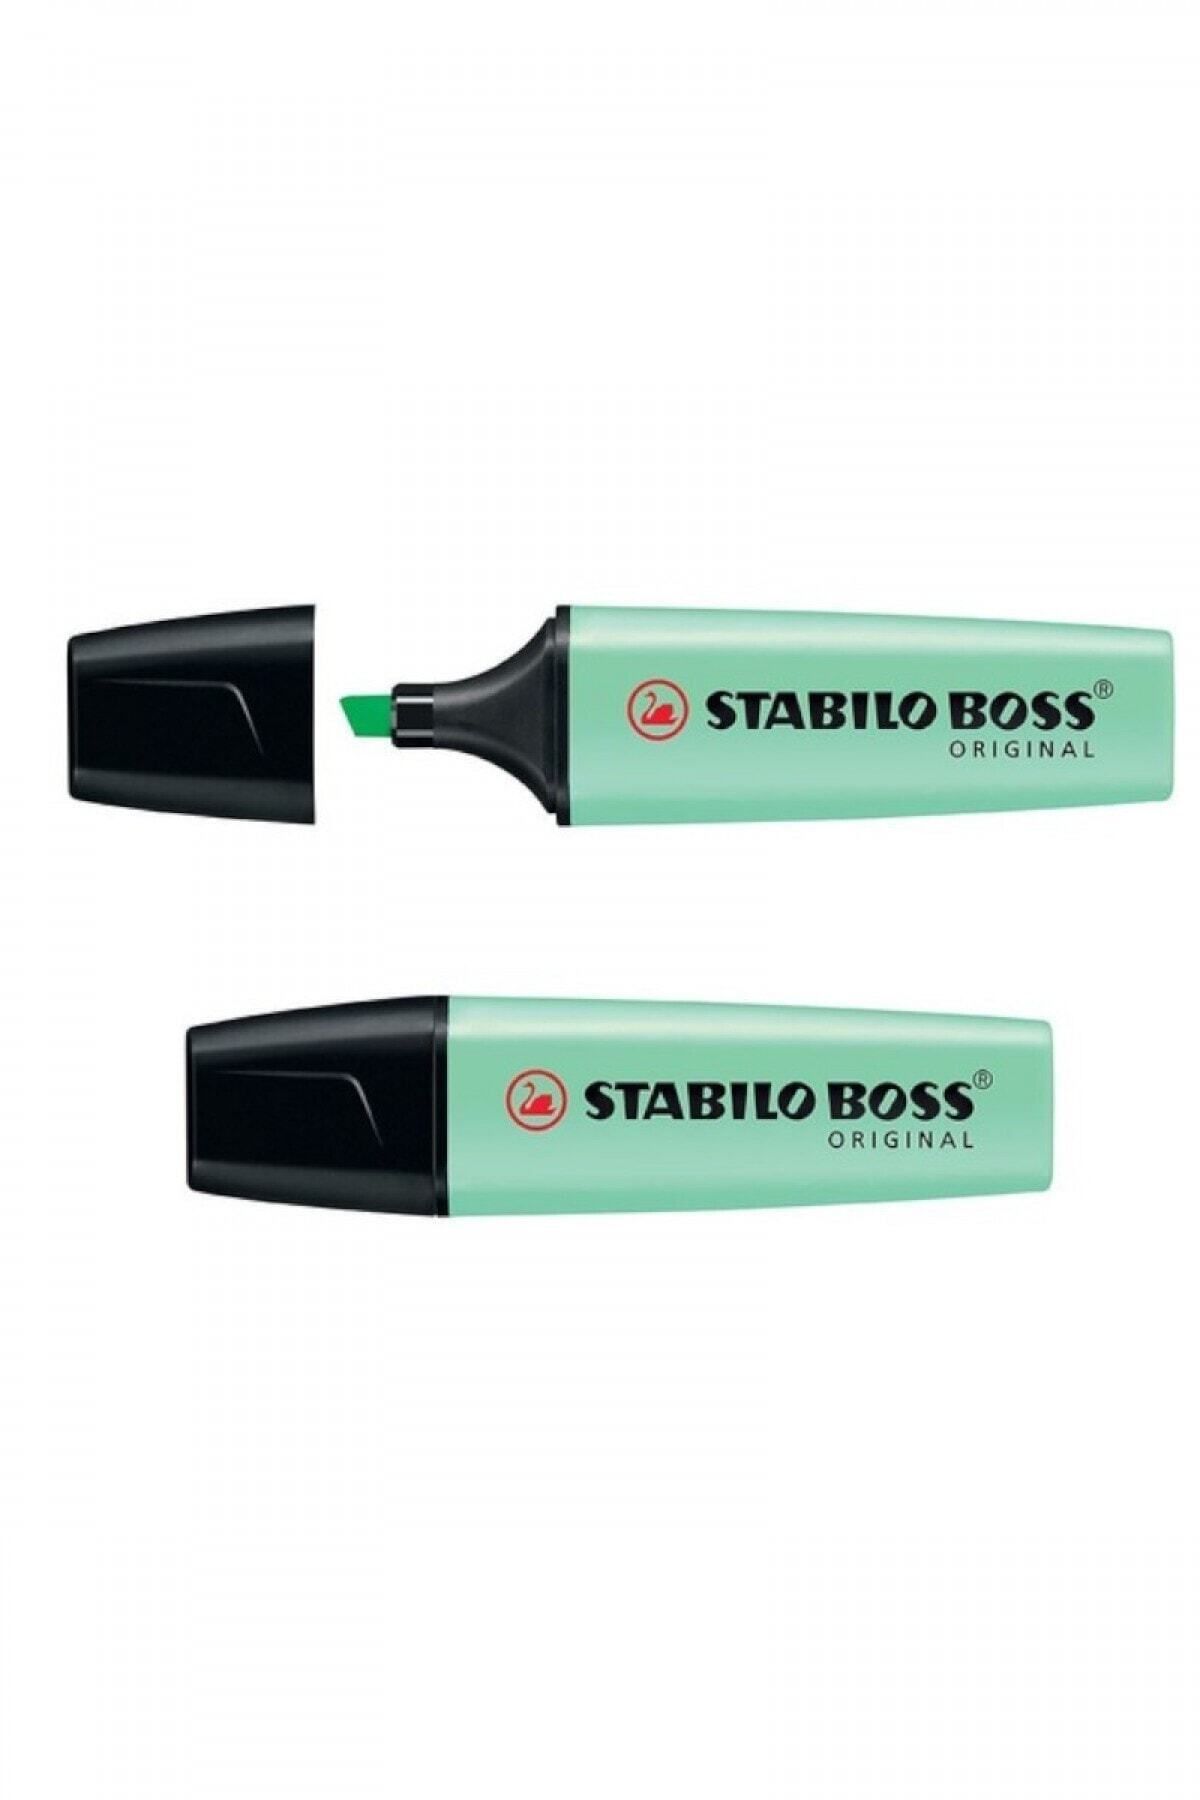 Stabilo Boss Original Pastel Yeşil